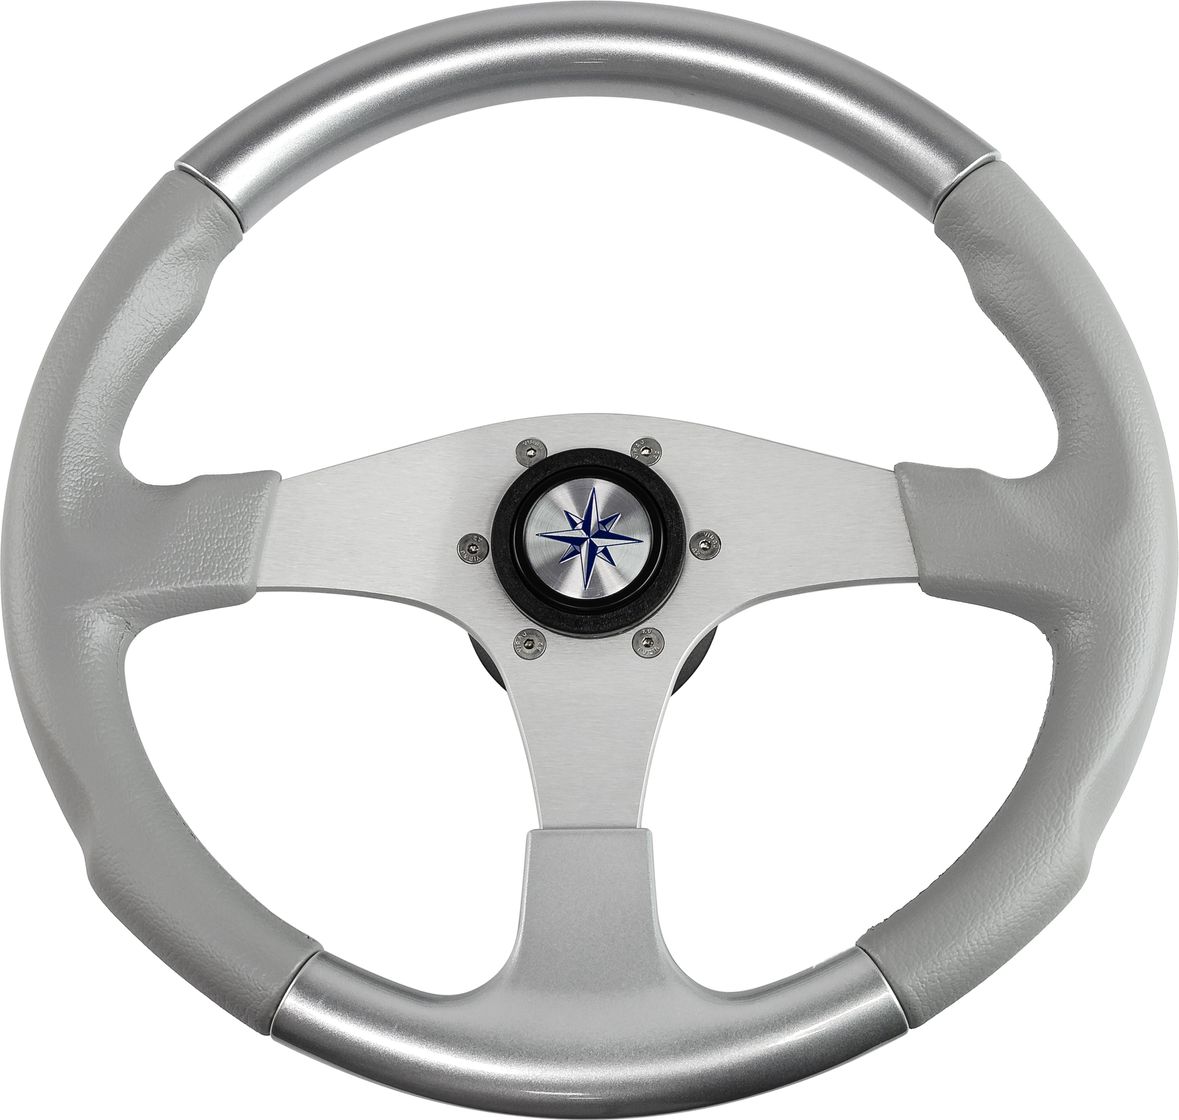 Рулевое колесо EVO MARINE 2 обод серосеребряный, спицы серебряные д. 355 мм VN850003-93 рулевое колесо elba sport обод спицы серебряные д 320 мм vn13321 01